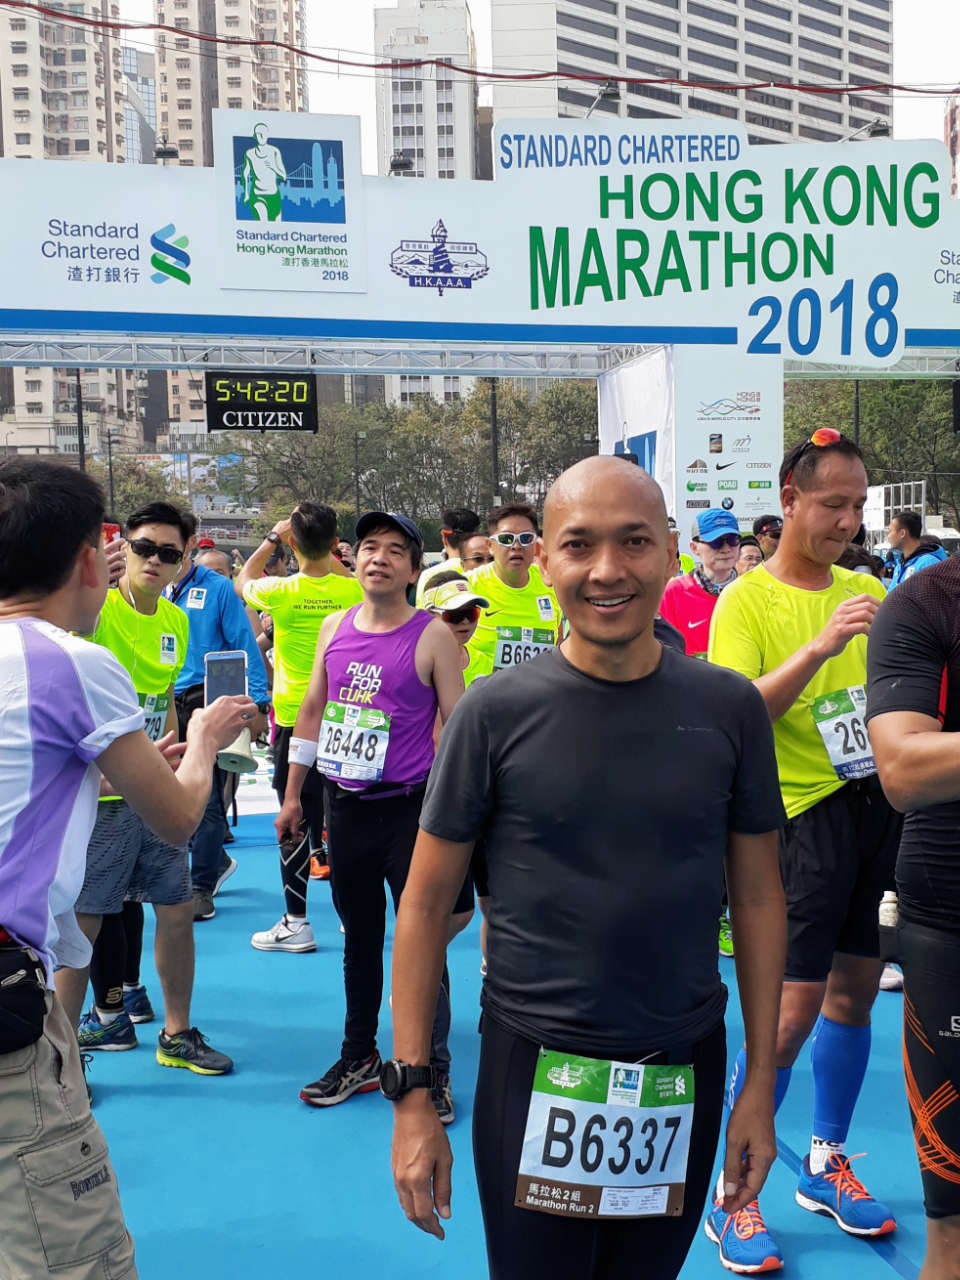 22nd Edition of Standard Chartered Hong Kong Marathon Kicks Off My 2018 Running Calendar